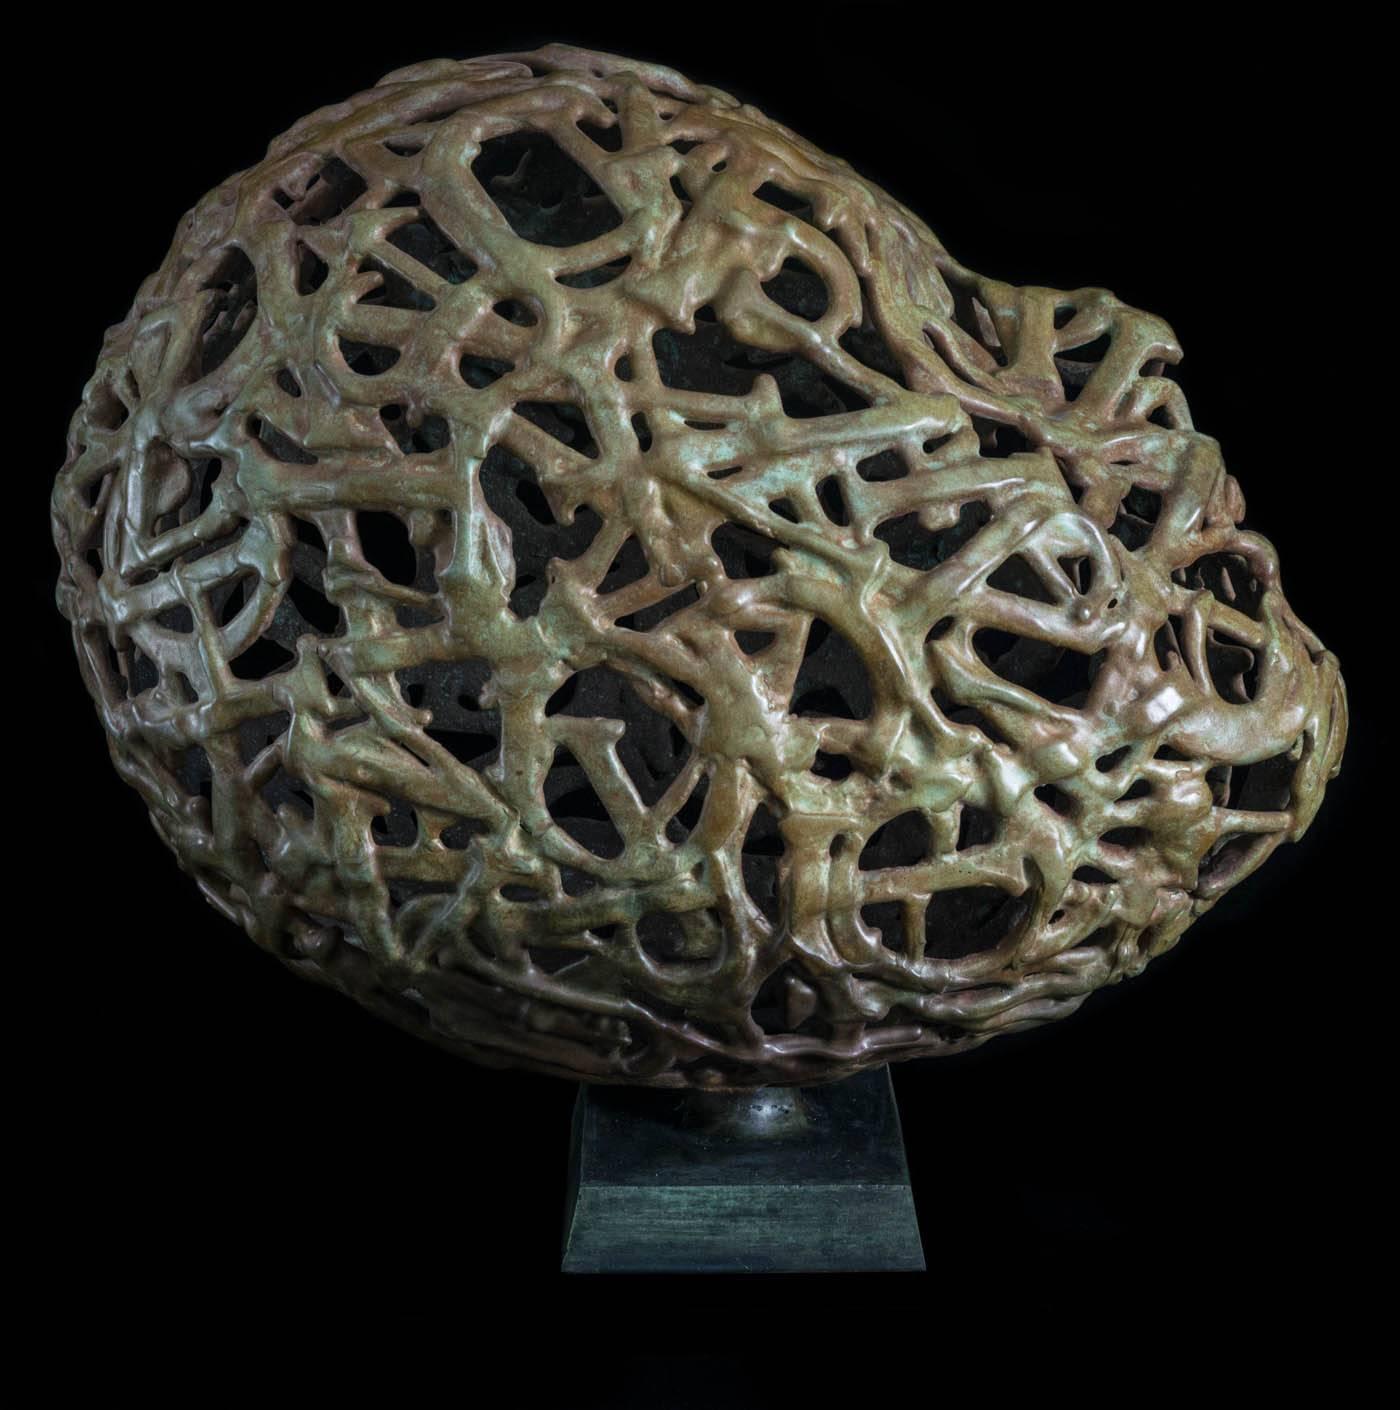 De grandes lettres en métal, soudées ensemble pour former une tête abstraite, sont habilement coulées dans le bronze par le sculpteur Dale Dunning. Le titre de cette œuvre énigmatique, 